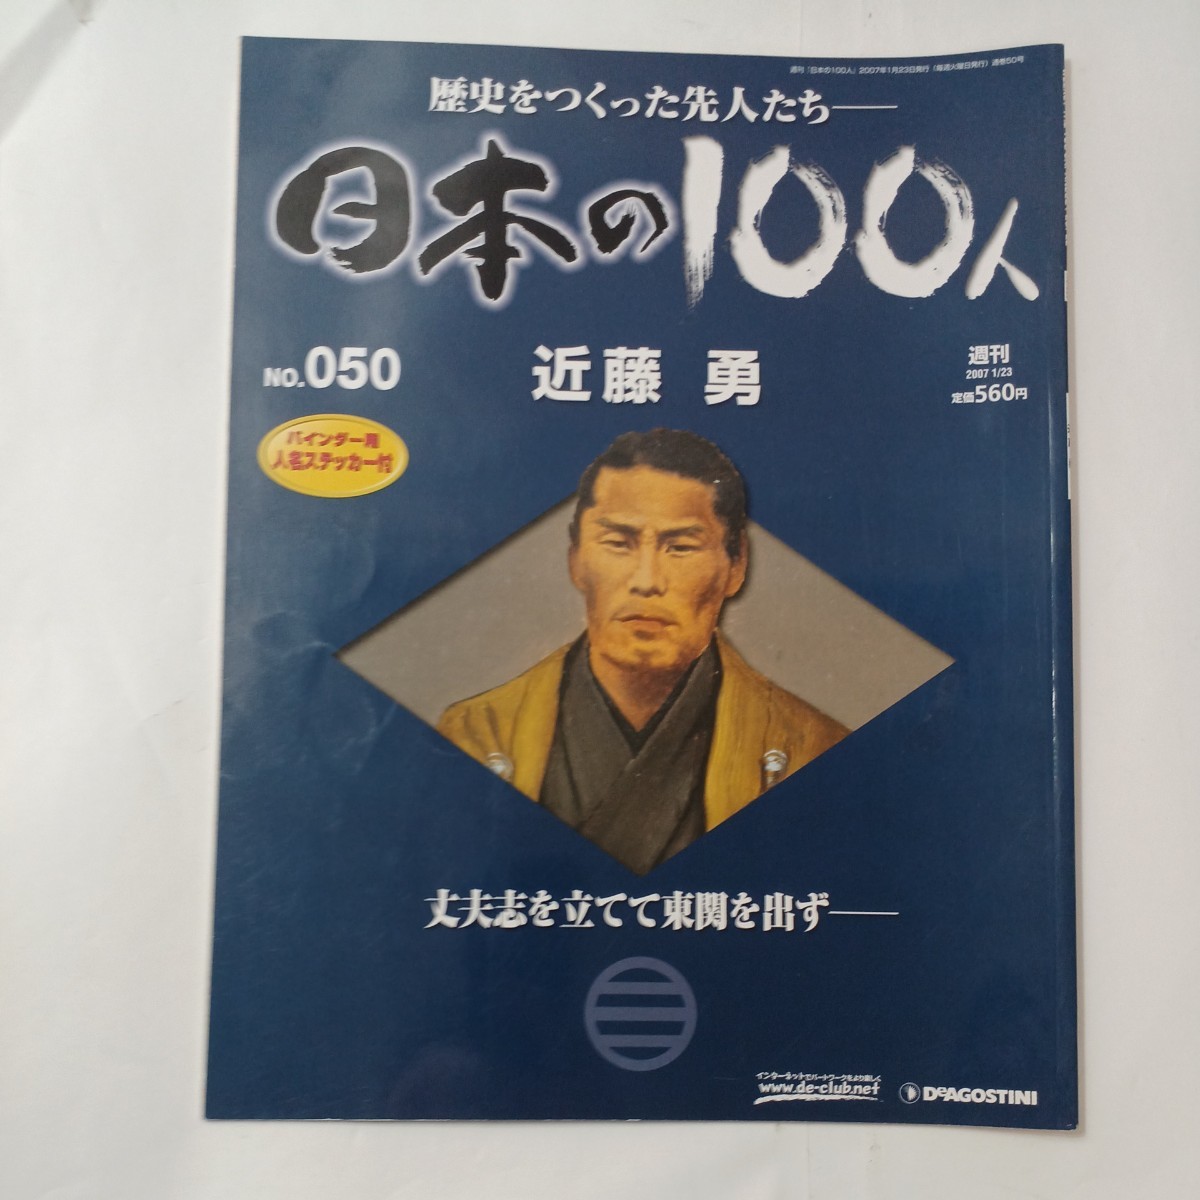 zaa-484♪歴史を作った先人たち日本の100人シリーズ2冊 新選組を支えた隊士 『近藤勇』『土方歳三』